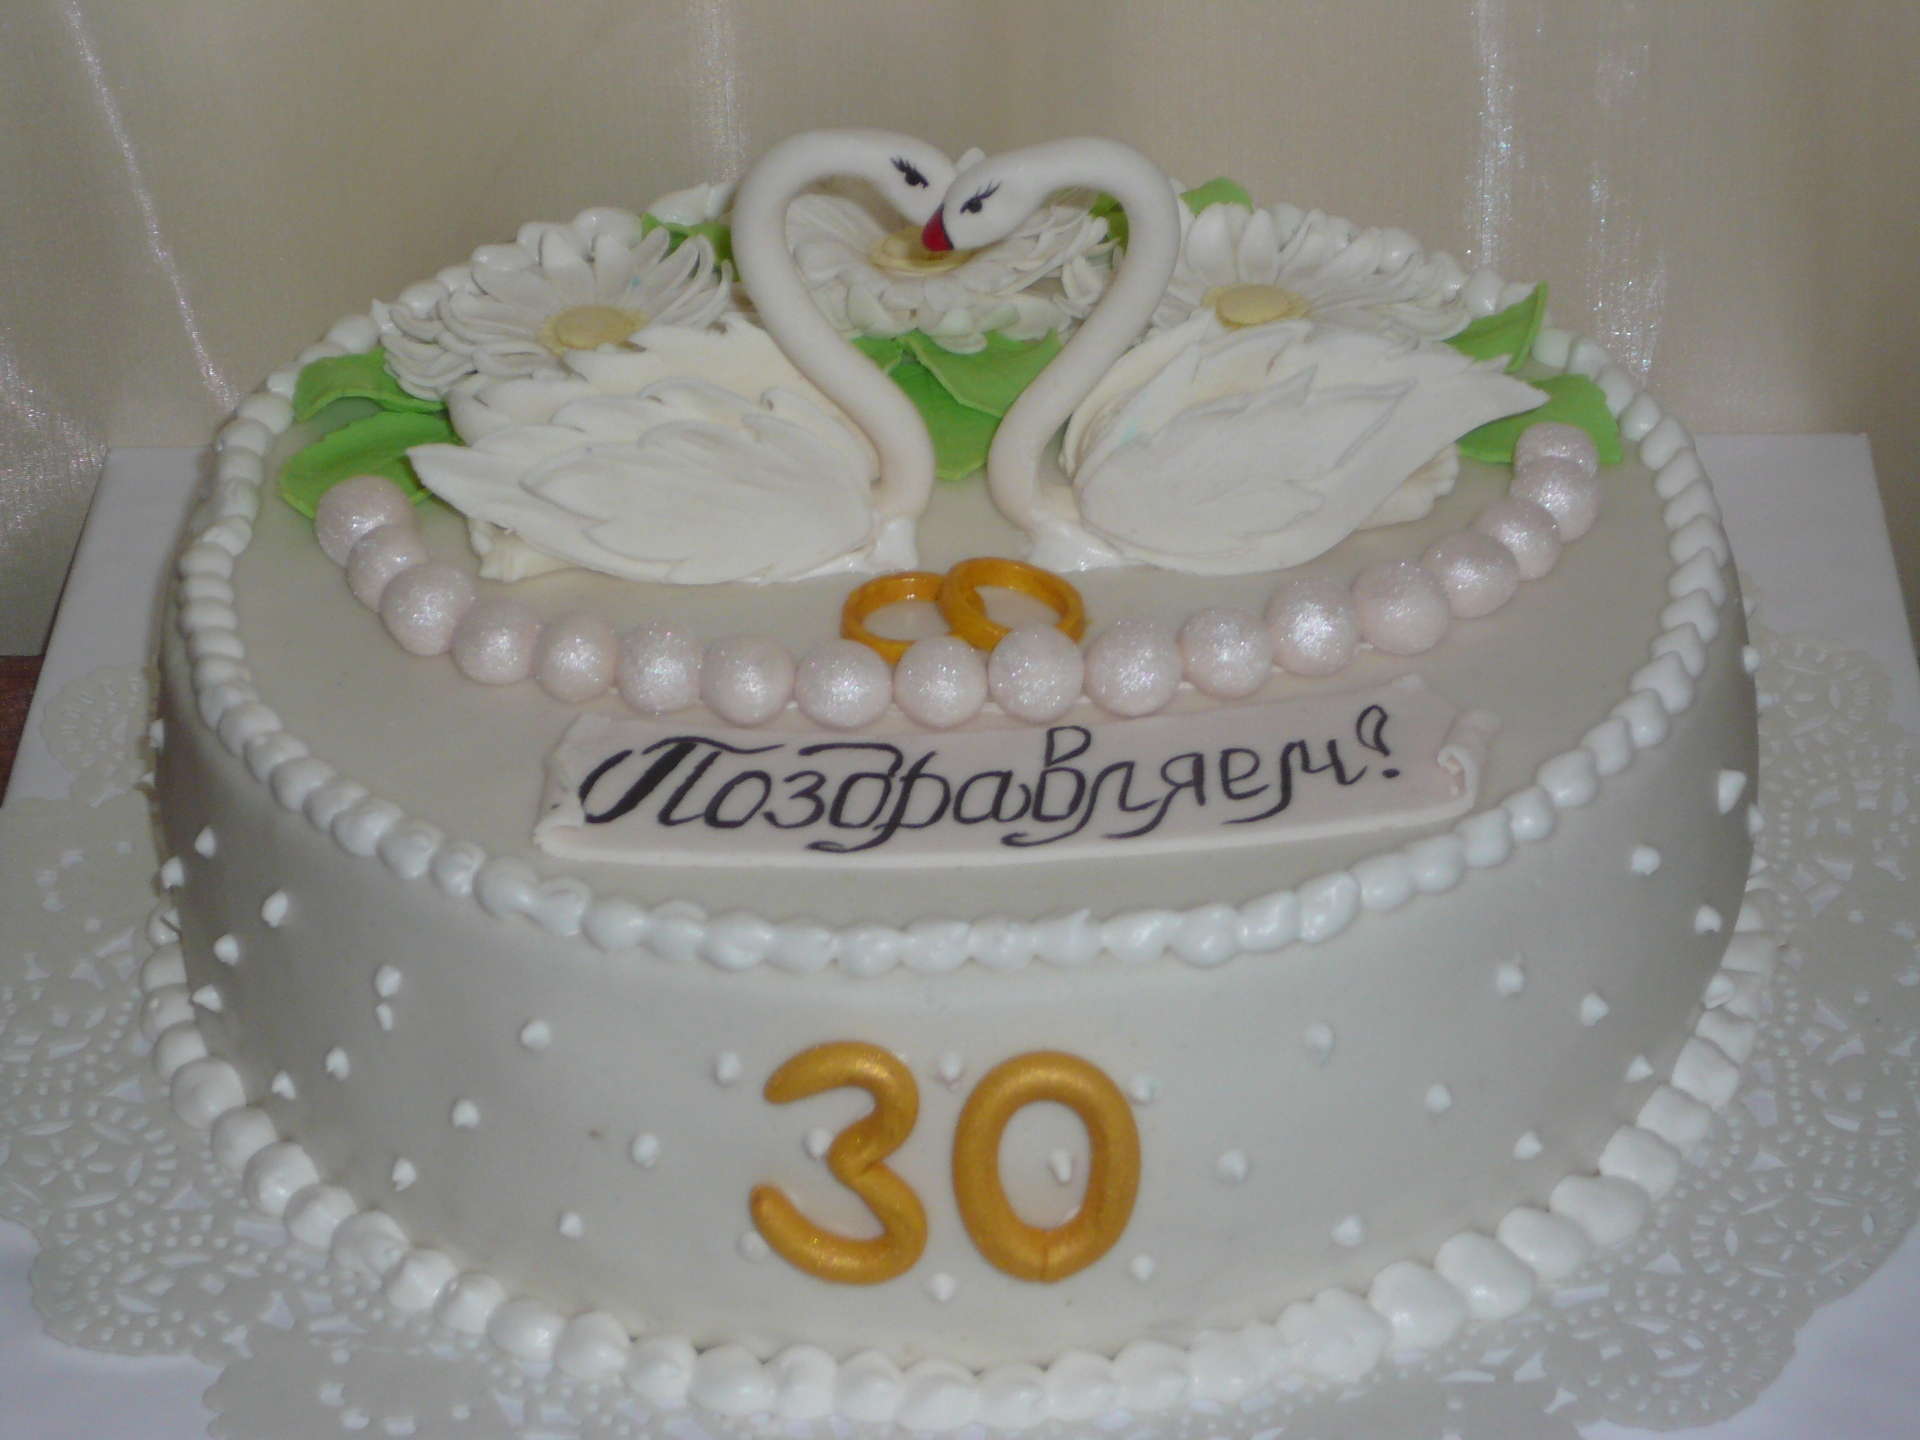 Торт на годовщину родителей. Торт на 30 лет свадьбы. Тортик на годовщину свадьбы. Торт натгодовщину свадьбы. Торт на юбилей свадьбы 30 лет.